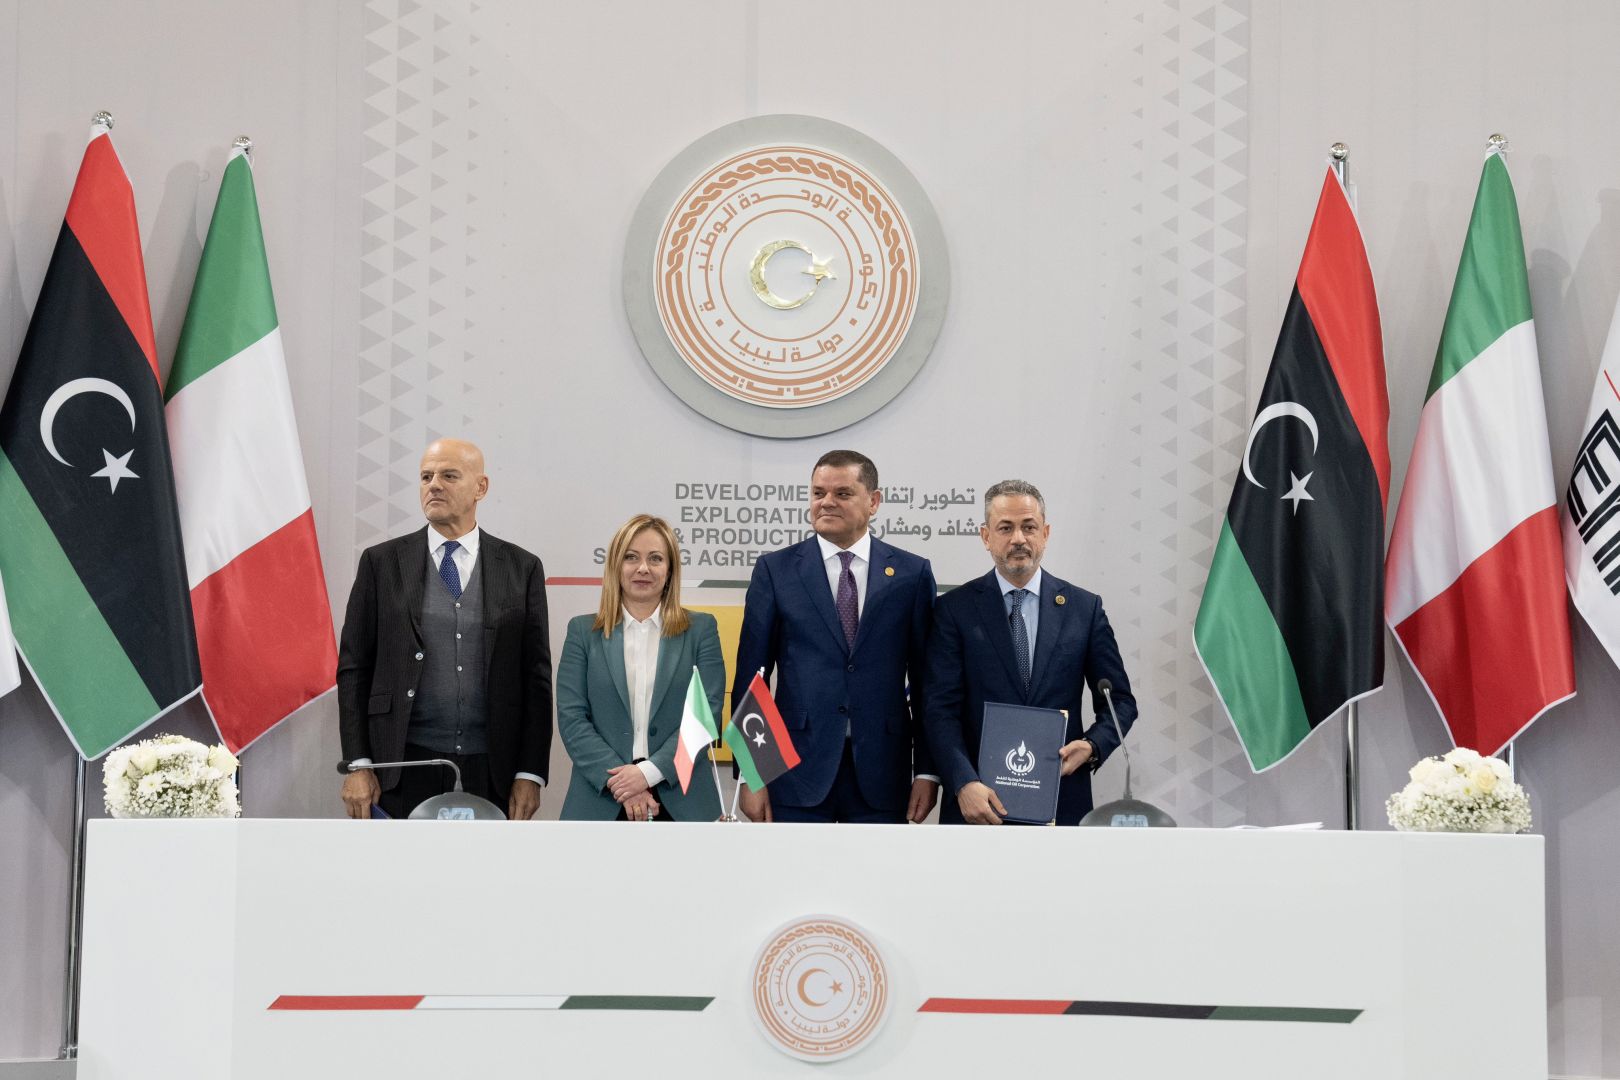 L'ITALIE ET LA LIBYE SIGNENT UN ACCORD GAZIER DE 8 MILLIARDS DE DOLLARS PENDANT LA VISITE DE LA PREMIÈRE MINISTRE GIORGIA MELONI